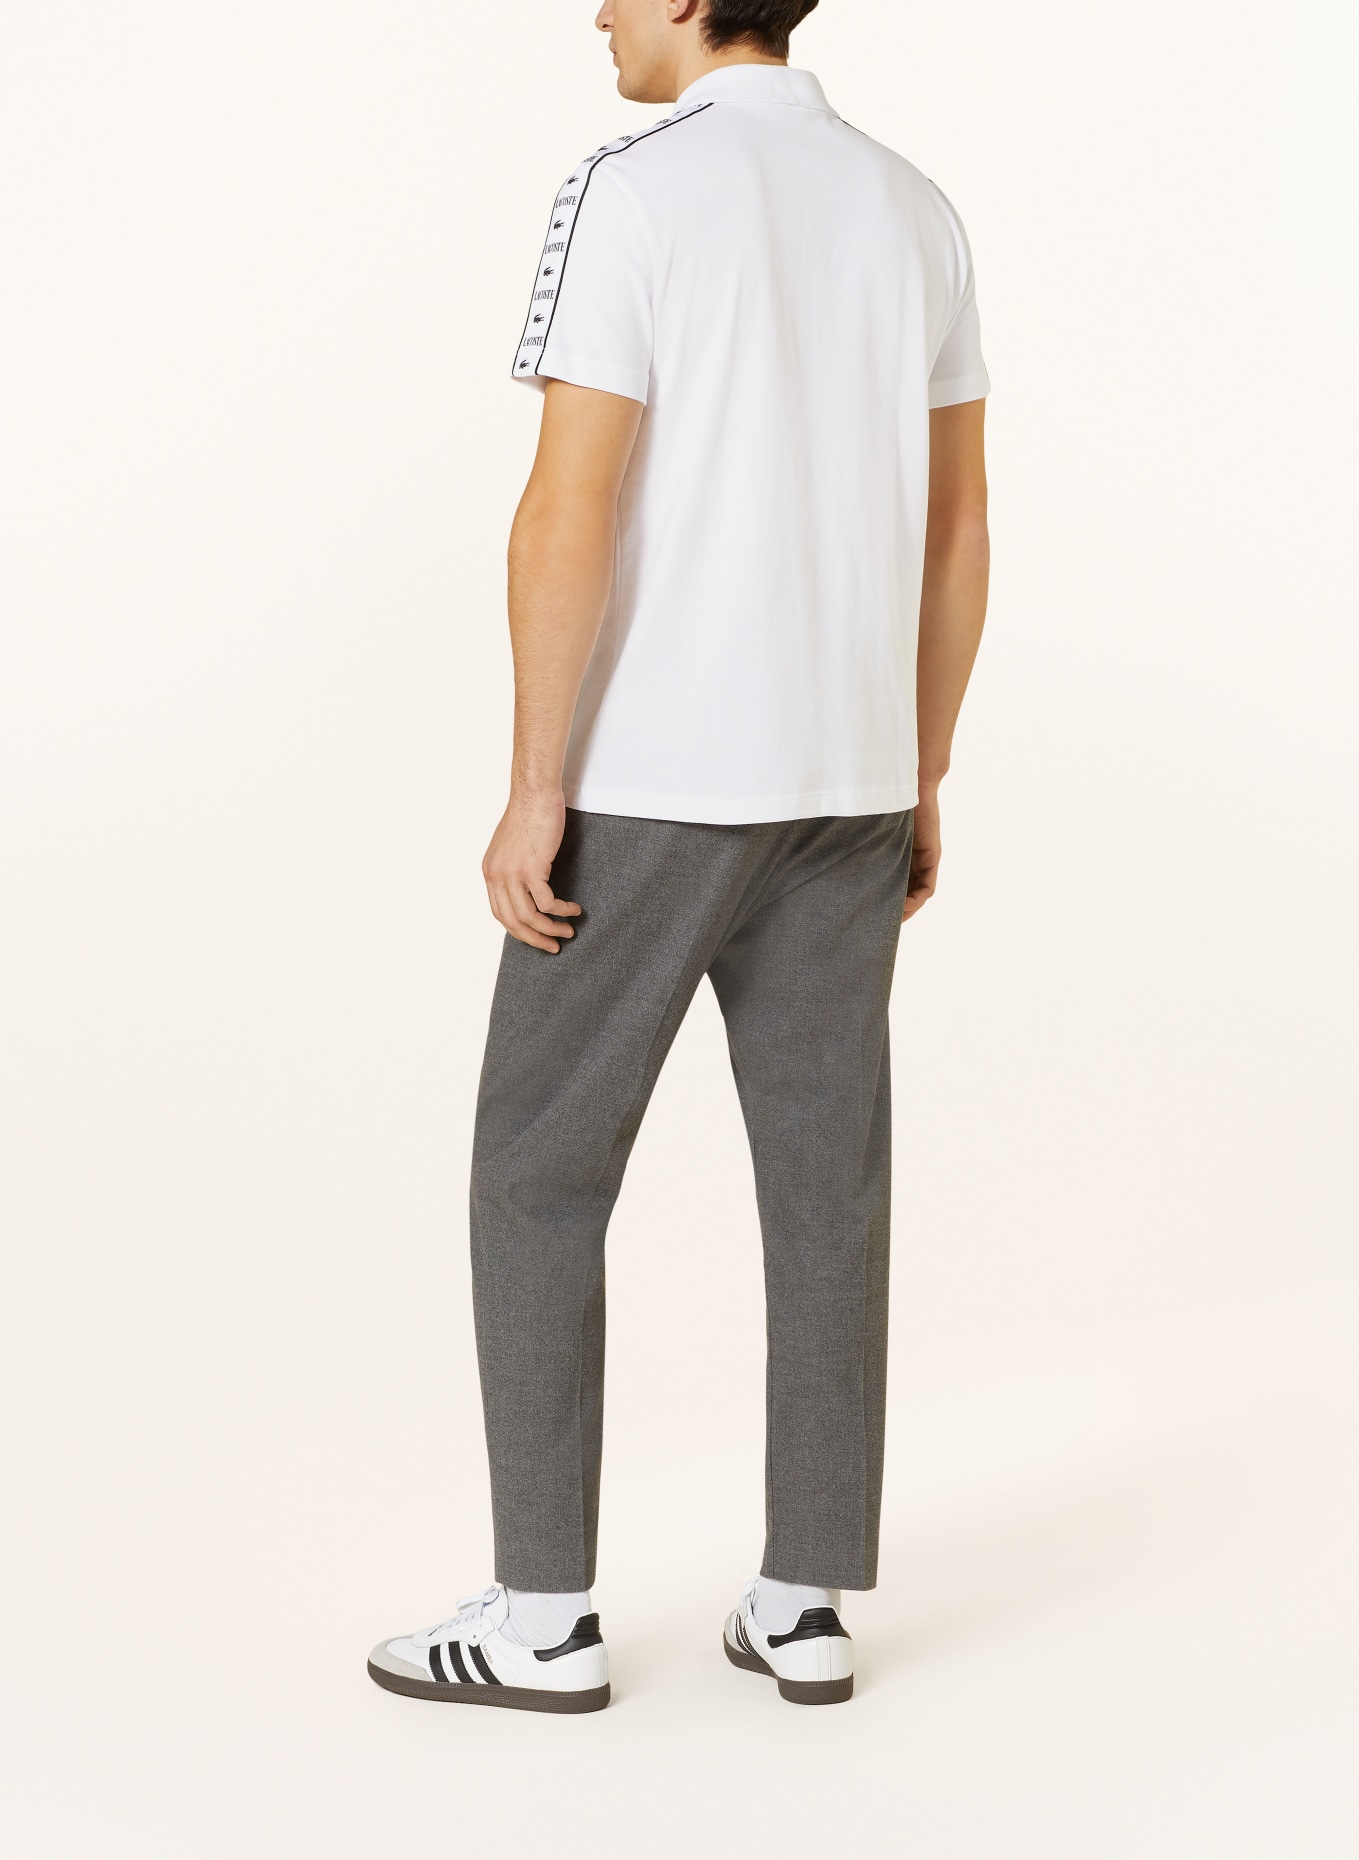 LACOSTE Piqué-Poloshirt Regular Fit, Farbe: WEISS (Bild 3)